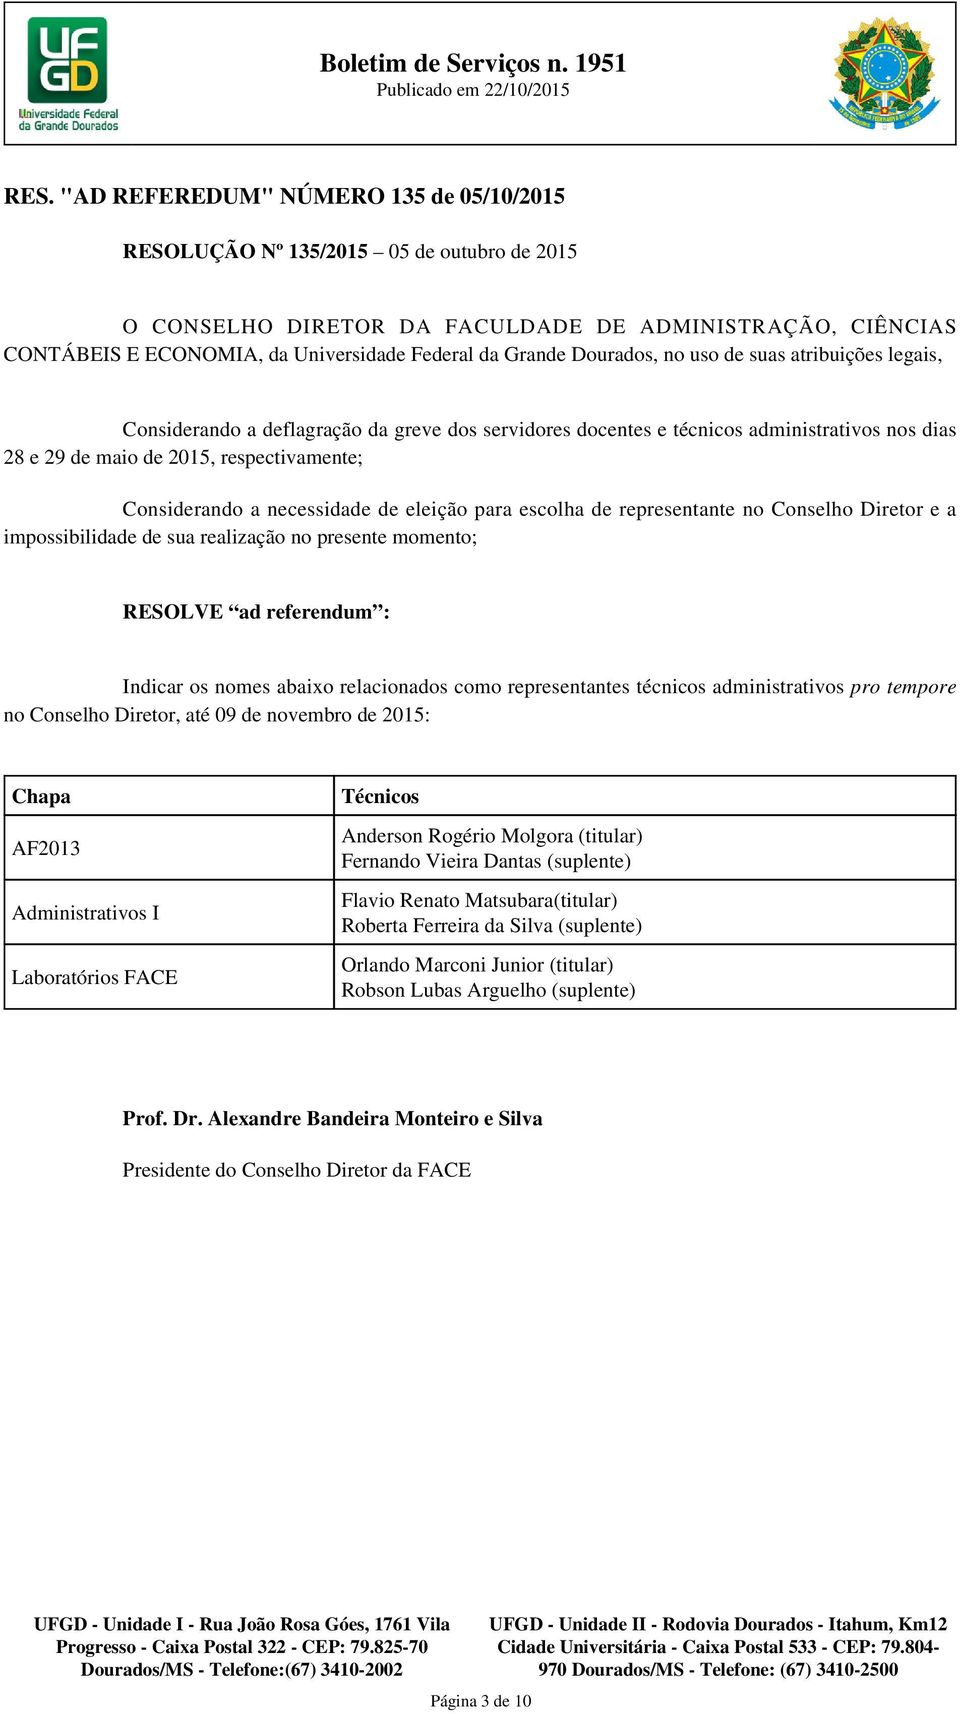 representantes técnicos administrativos pro tempore no Conselho Diretor, até 09 de novembro de 2015: Chapa AF2013 Administrativos I Laboratórios FACE Técnicos Anderson Rogério Molgora